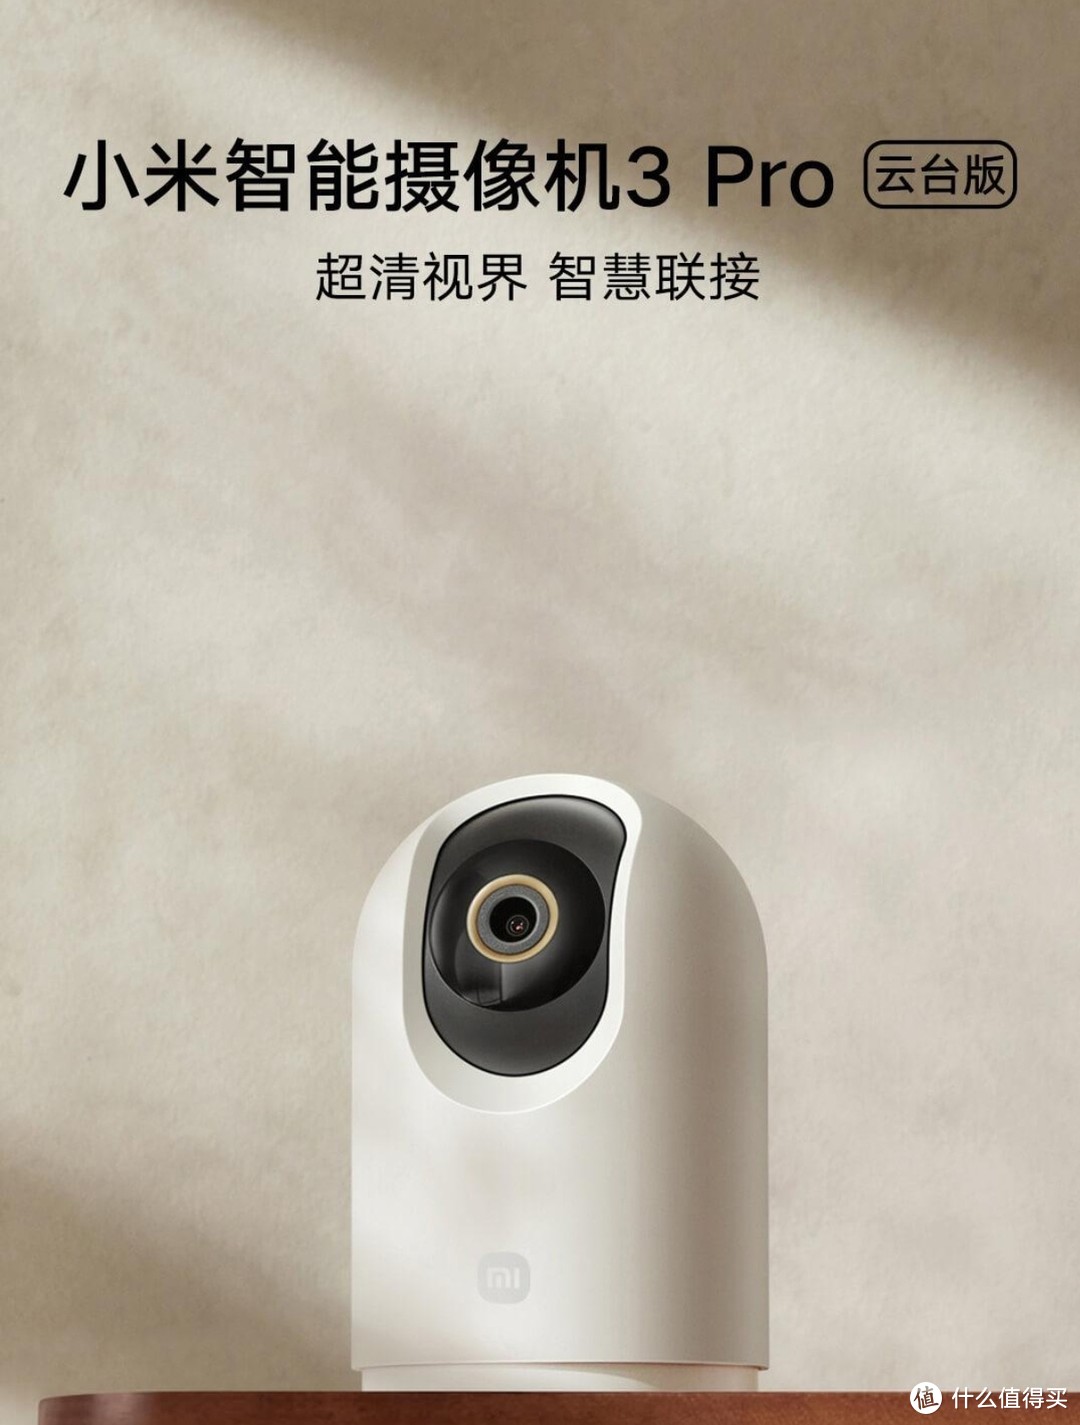 小米智能摄像机3pro云台版:家庭守护的千里眼